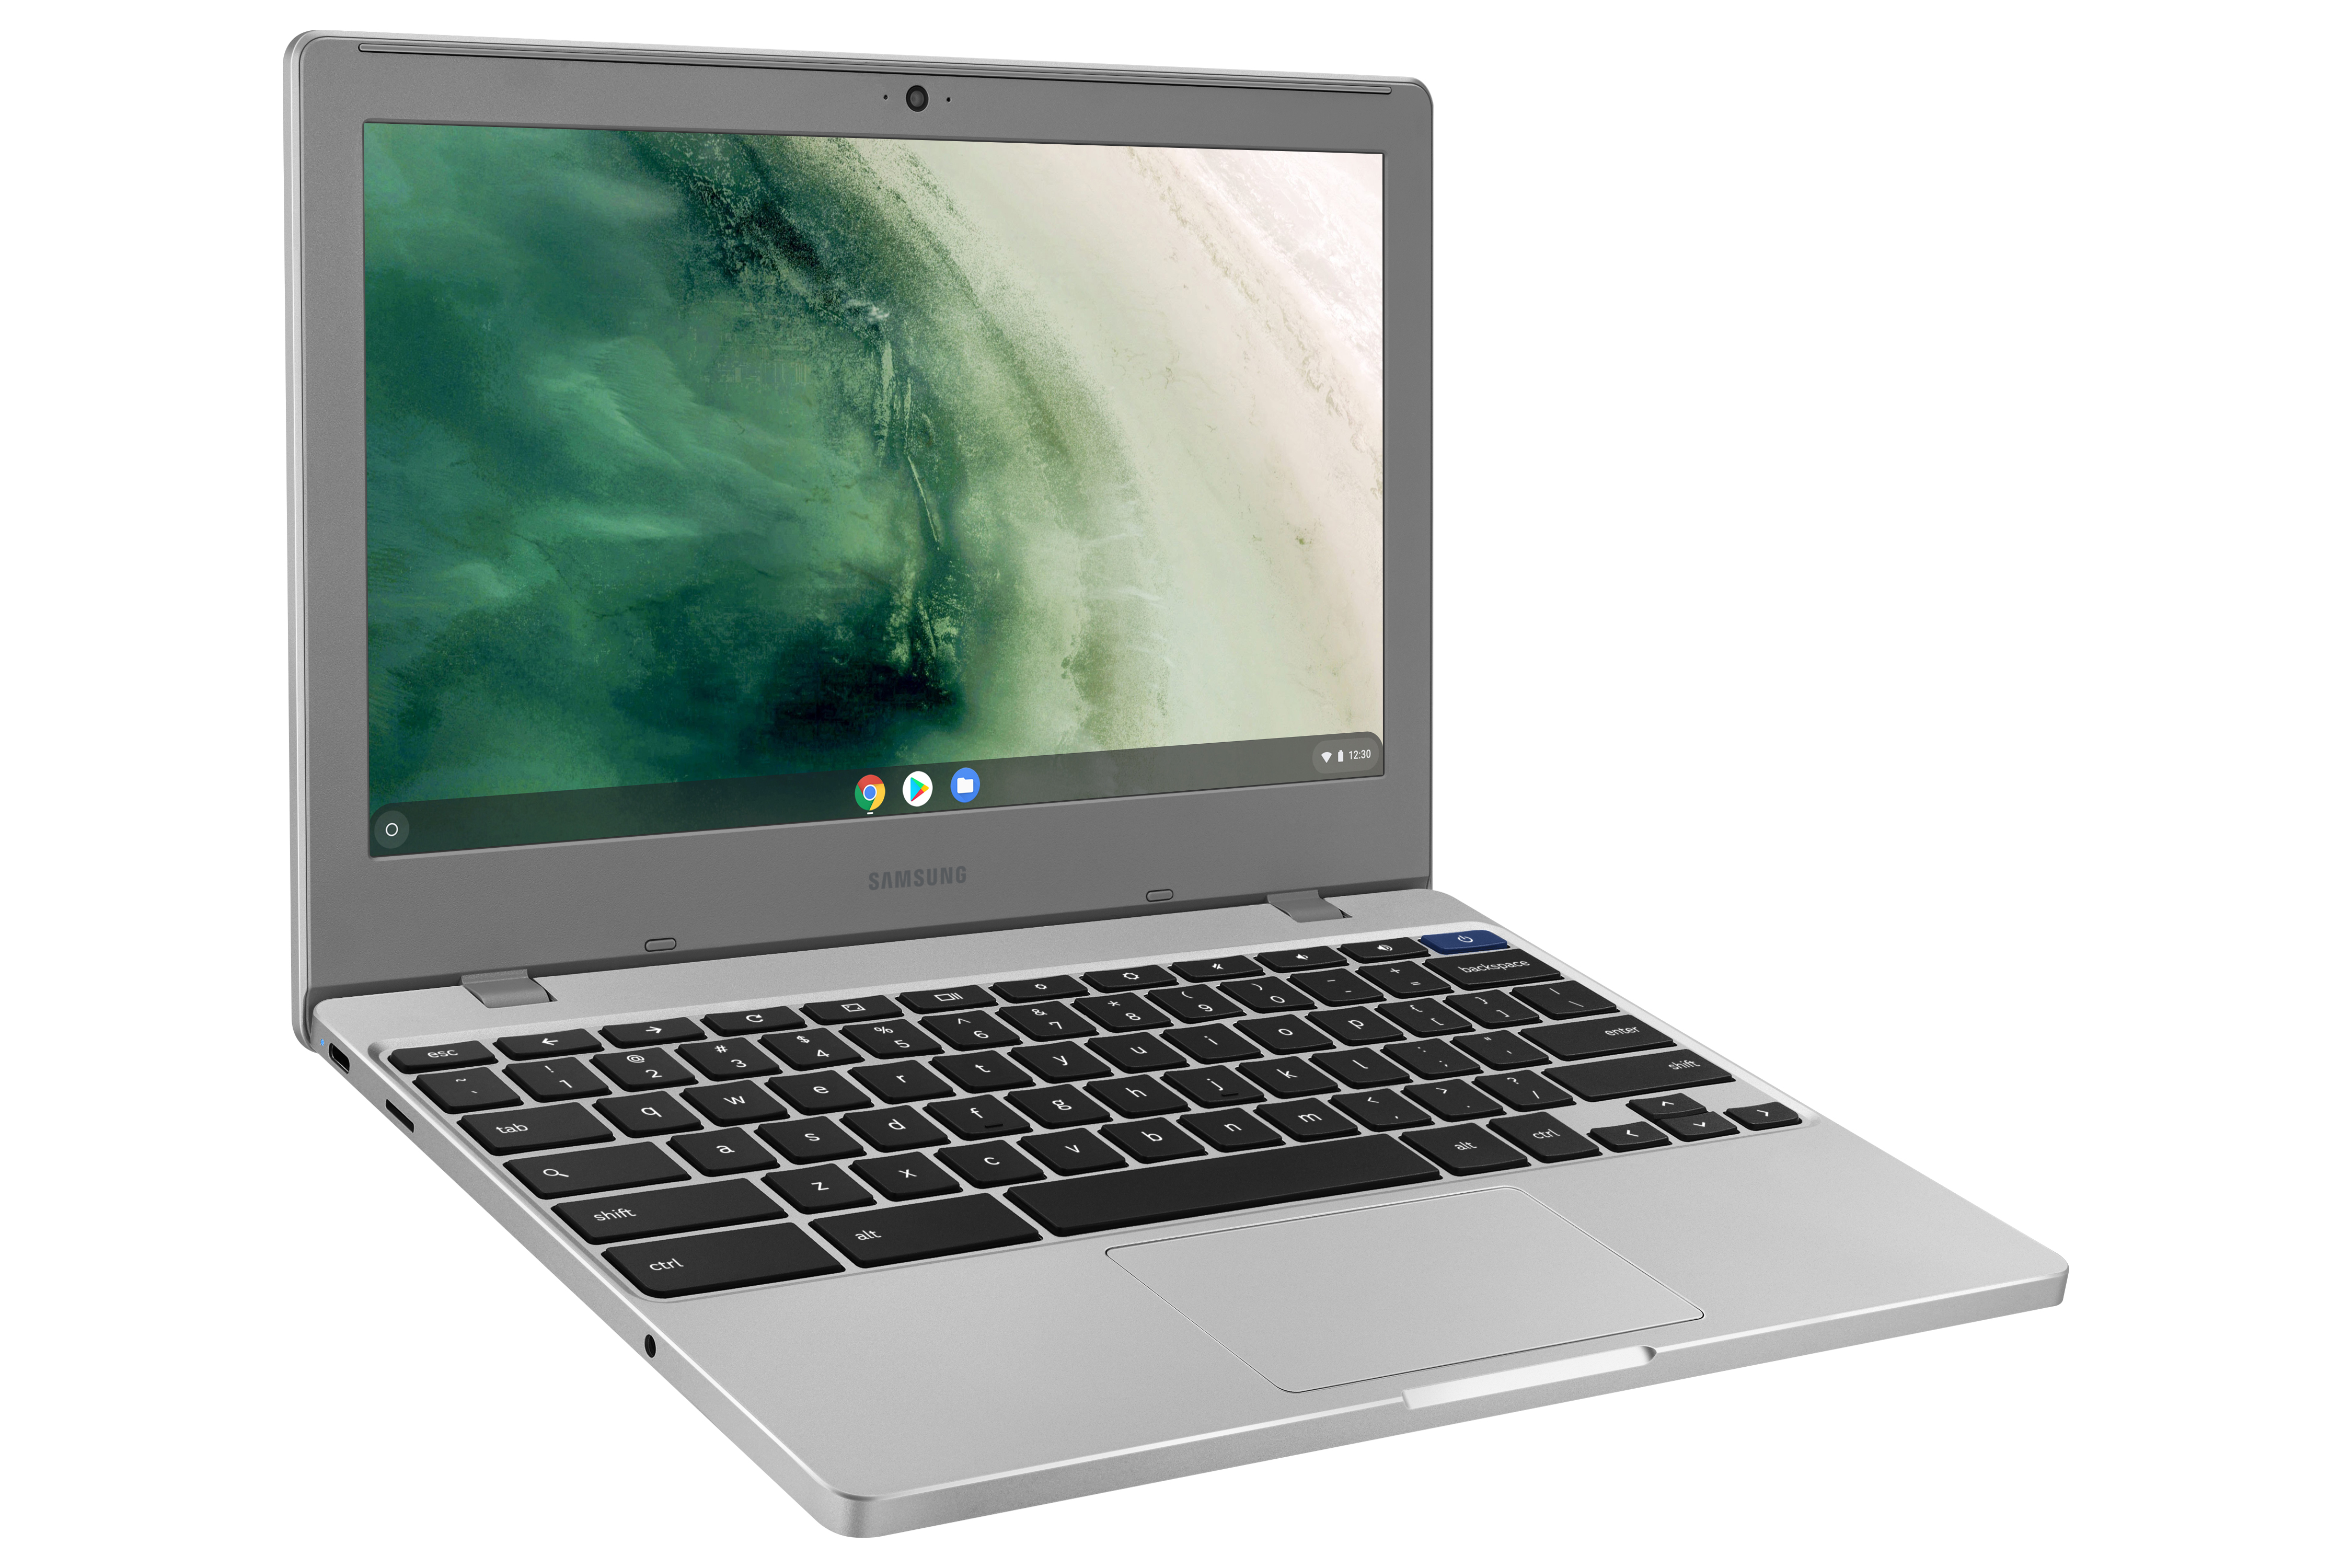 Novo Chromebook da Samsung 4 oferece um design refinado e carregamento USB-C por US $ 229 2